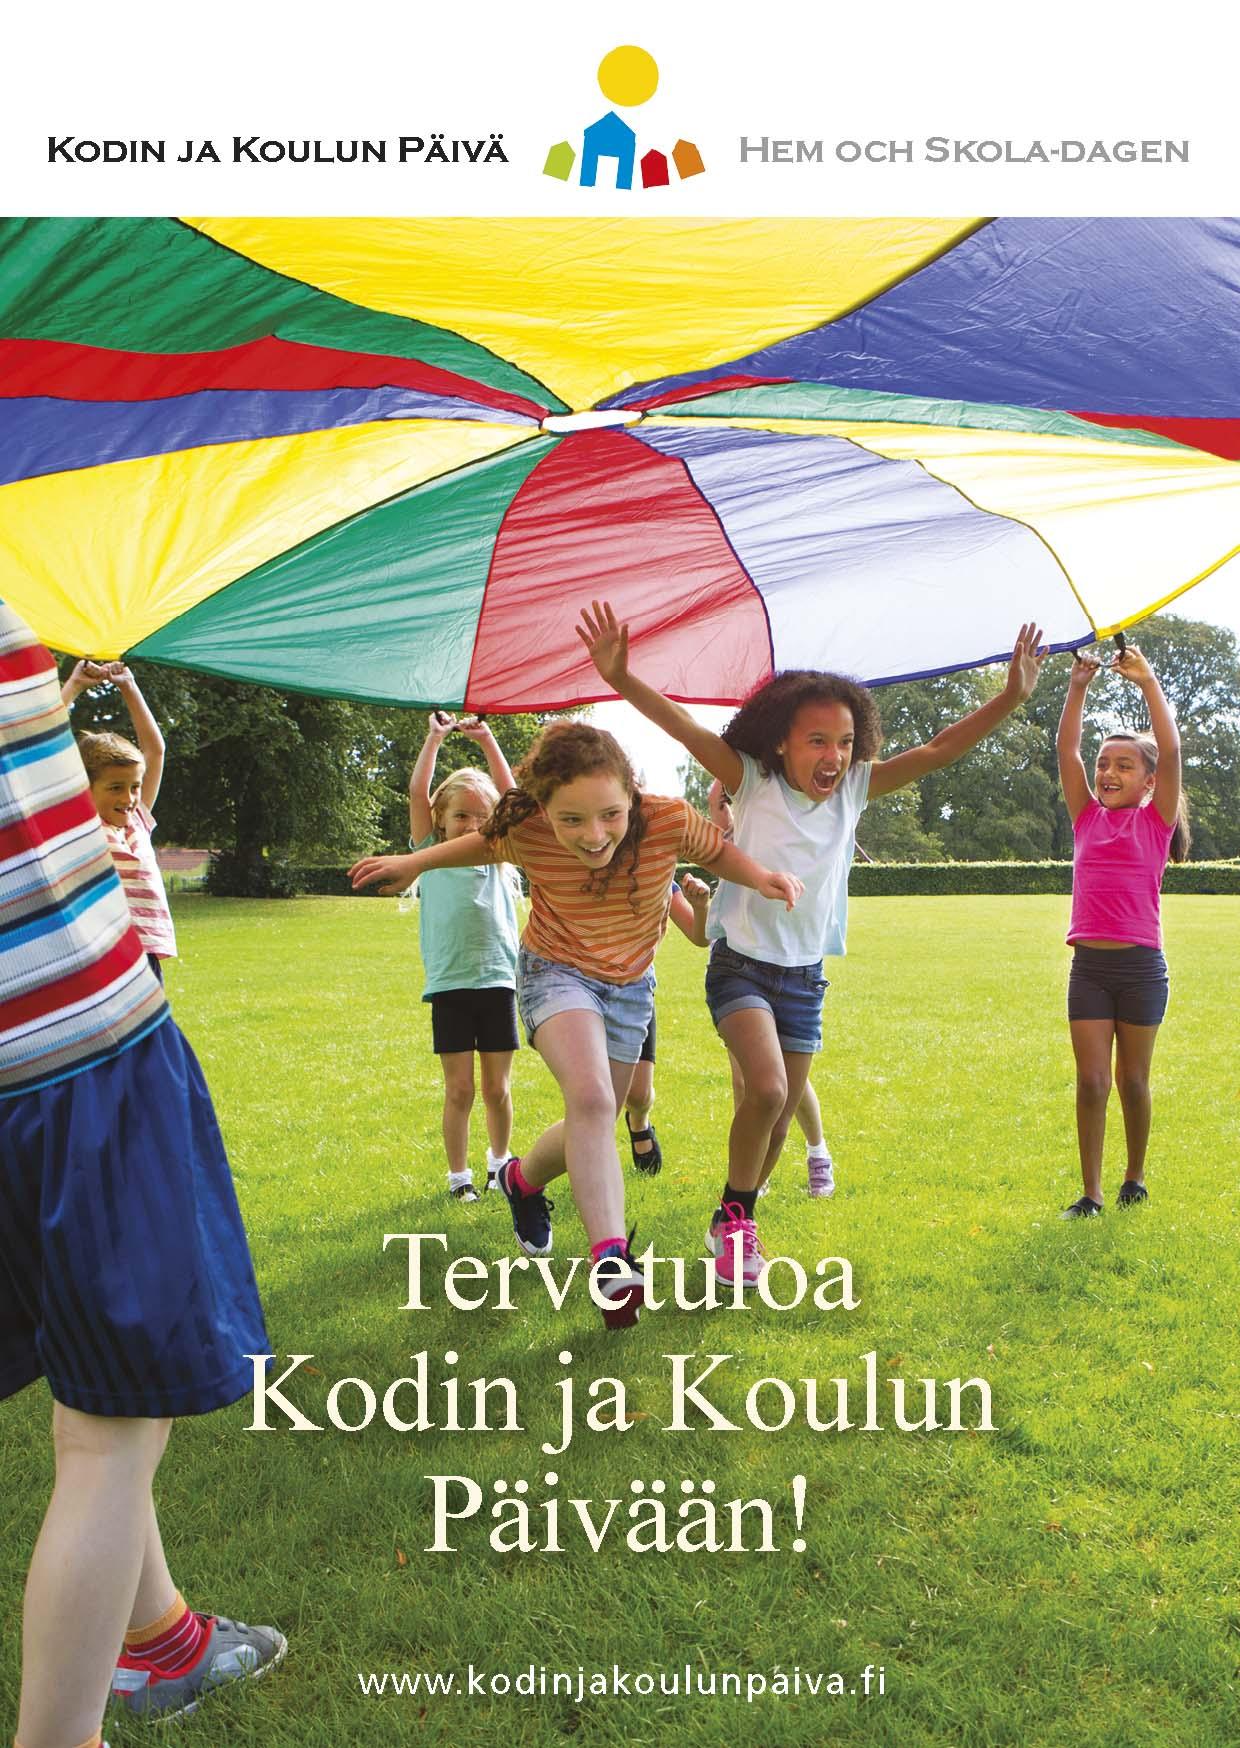 Kortti: Tervetuloa Kodin ja Koulun Päivään! www.kodinjakoulunpaiva.fi